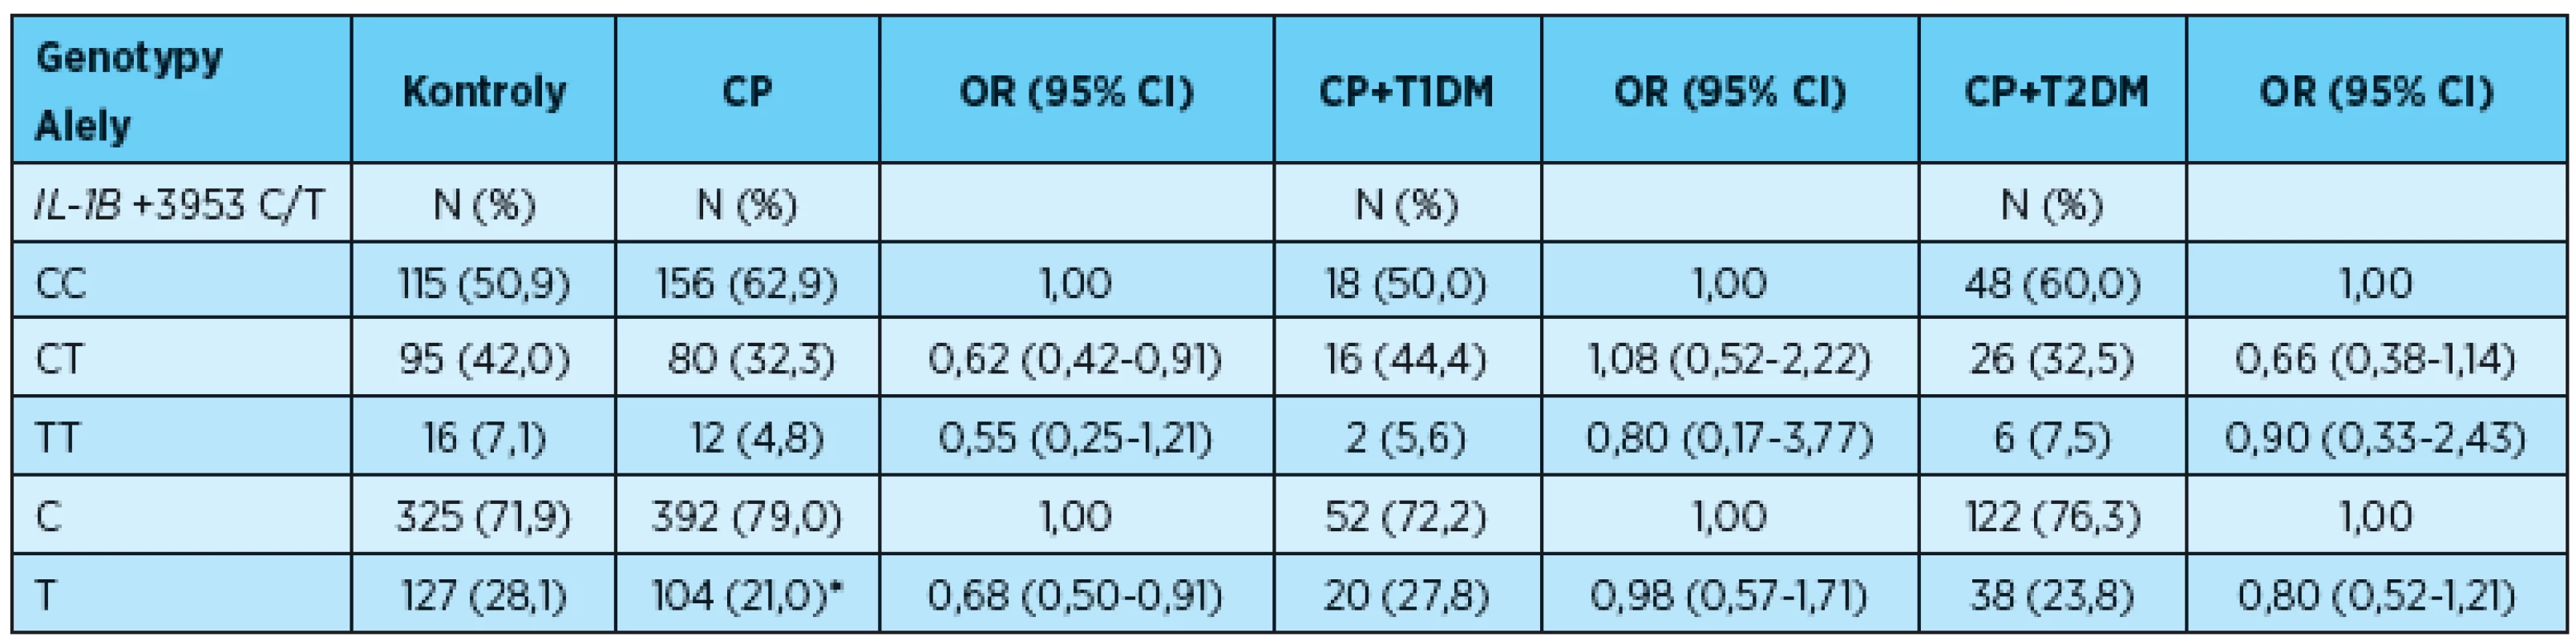 Genotypové a alelové frekvence polymorfismu v IL-1B +3953C/T (rs1143634) u pacientů s CP, CP+T1DM, CP+ T2DM a u kontrol